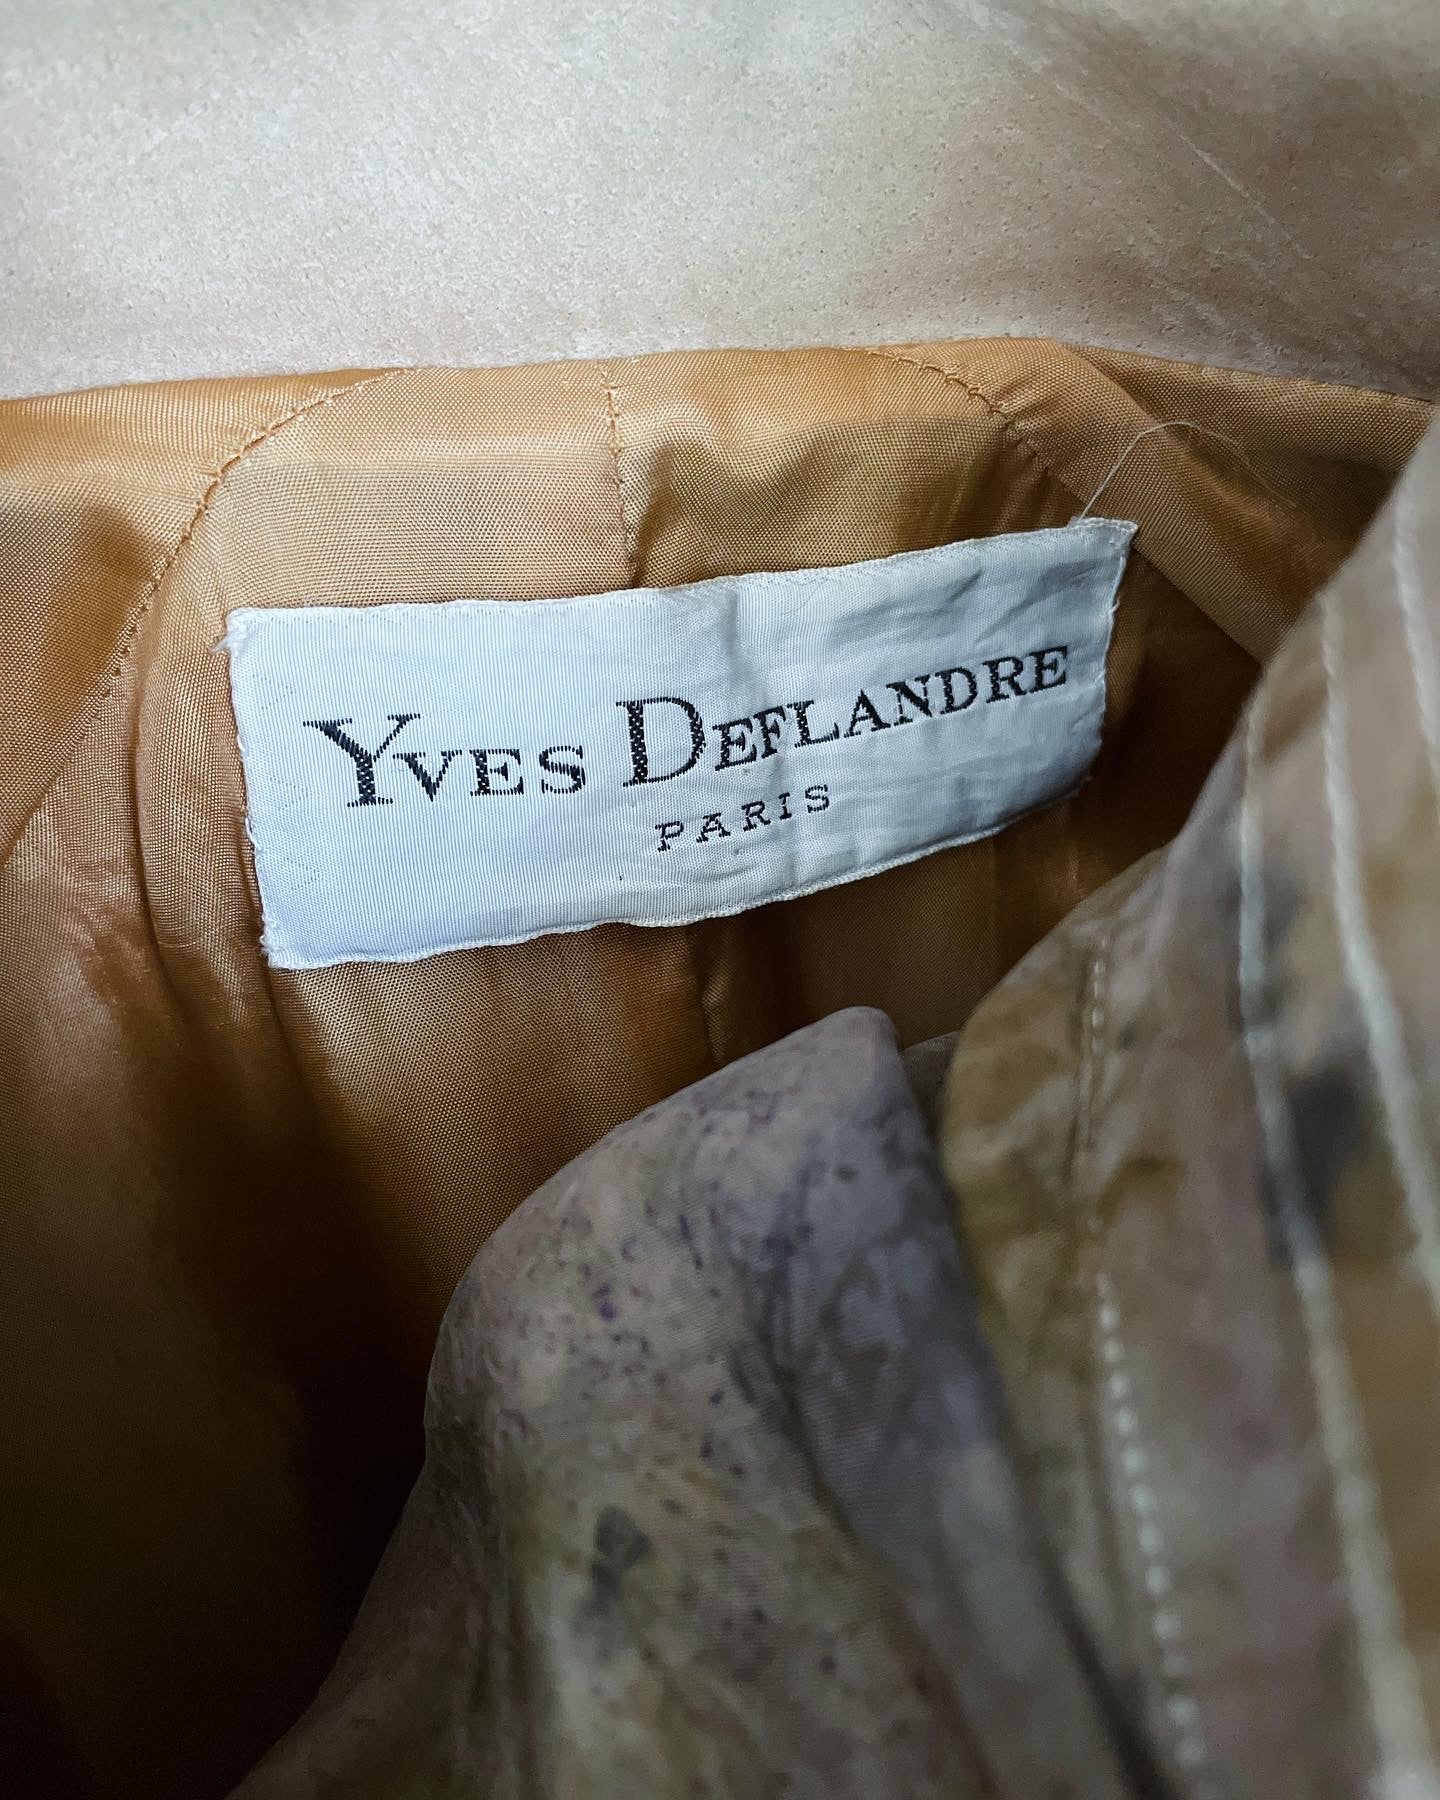 Yves Deflandre, Paris